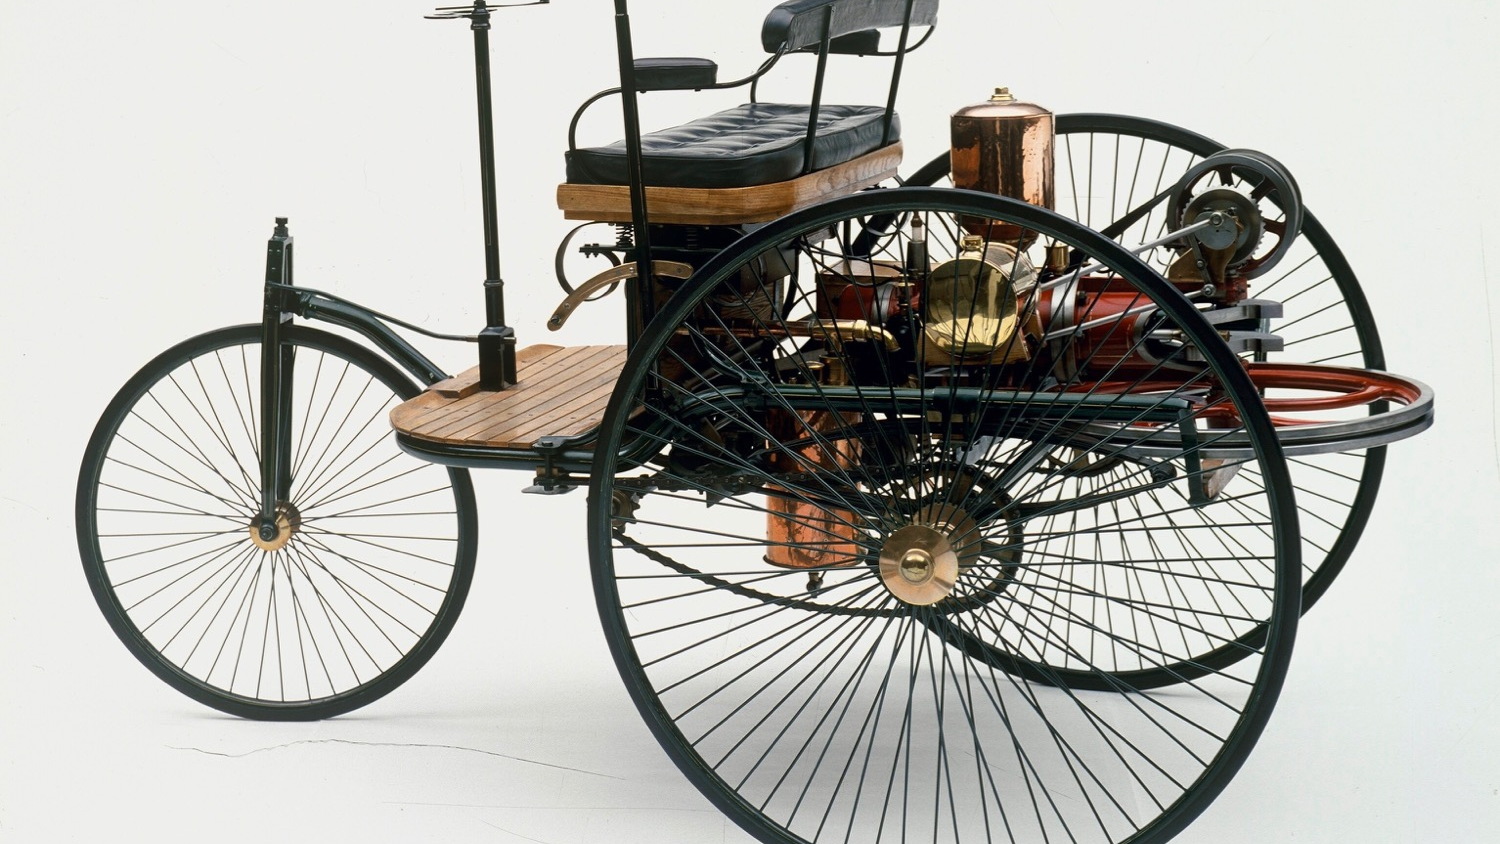 1886 Benz Patent Motorwagen